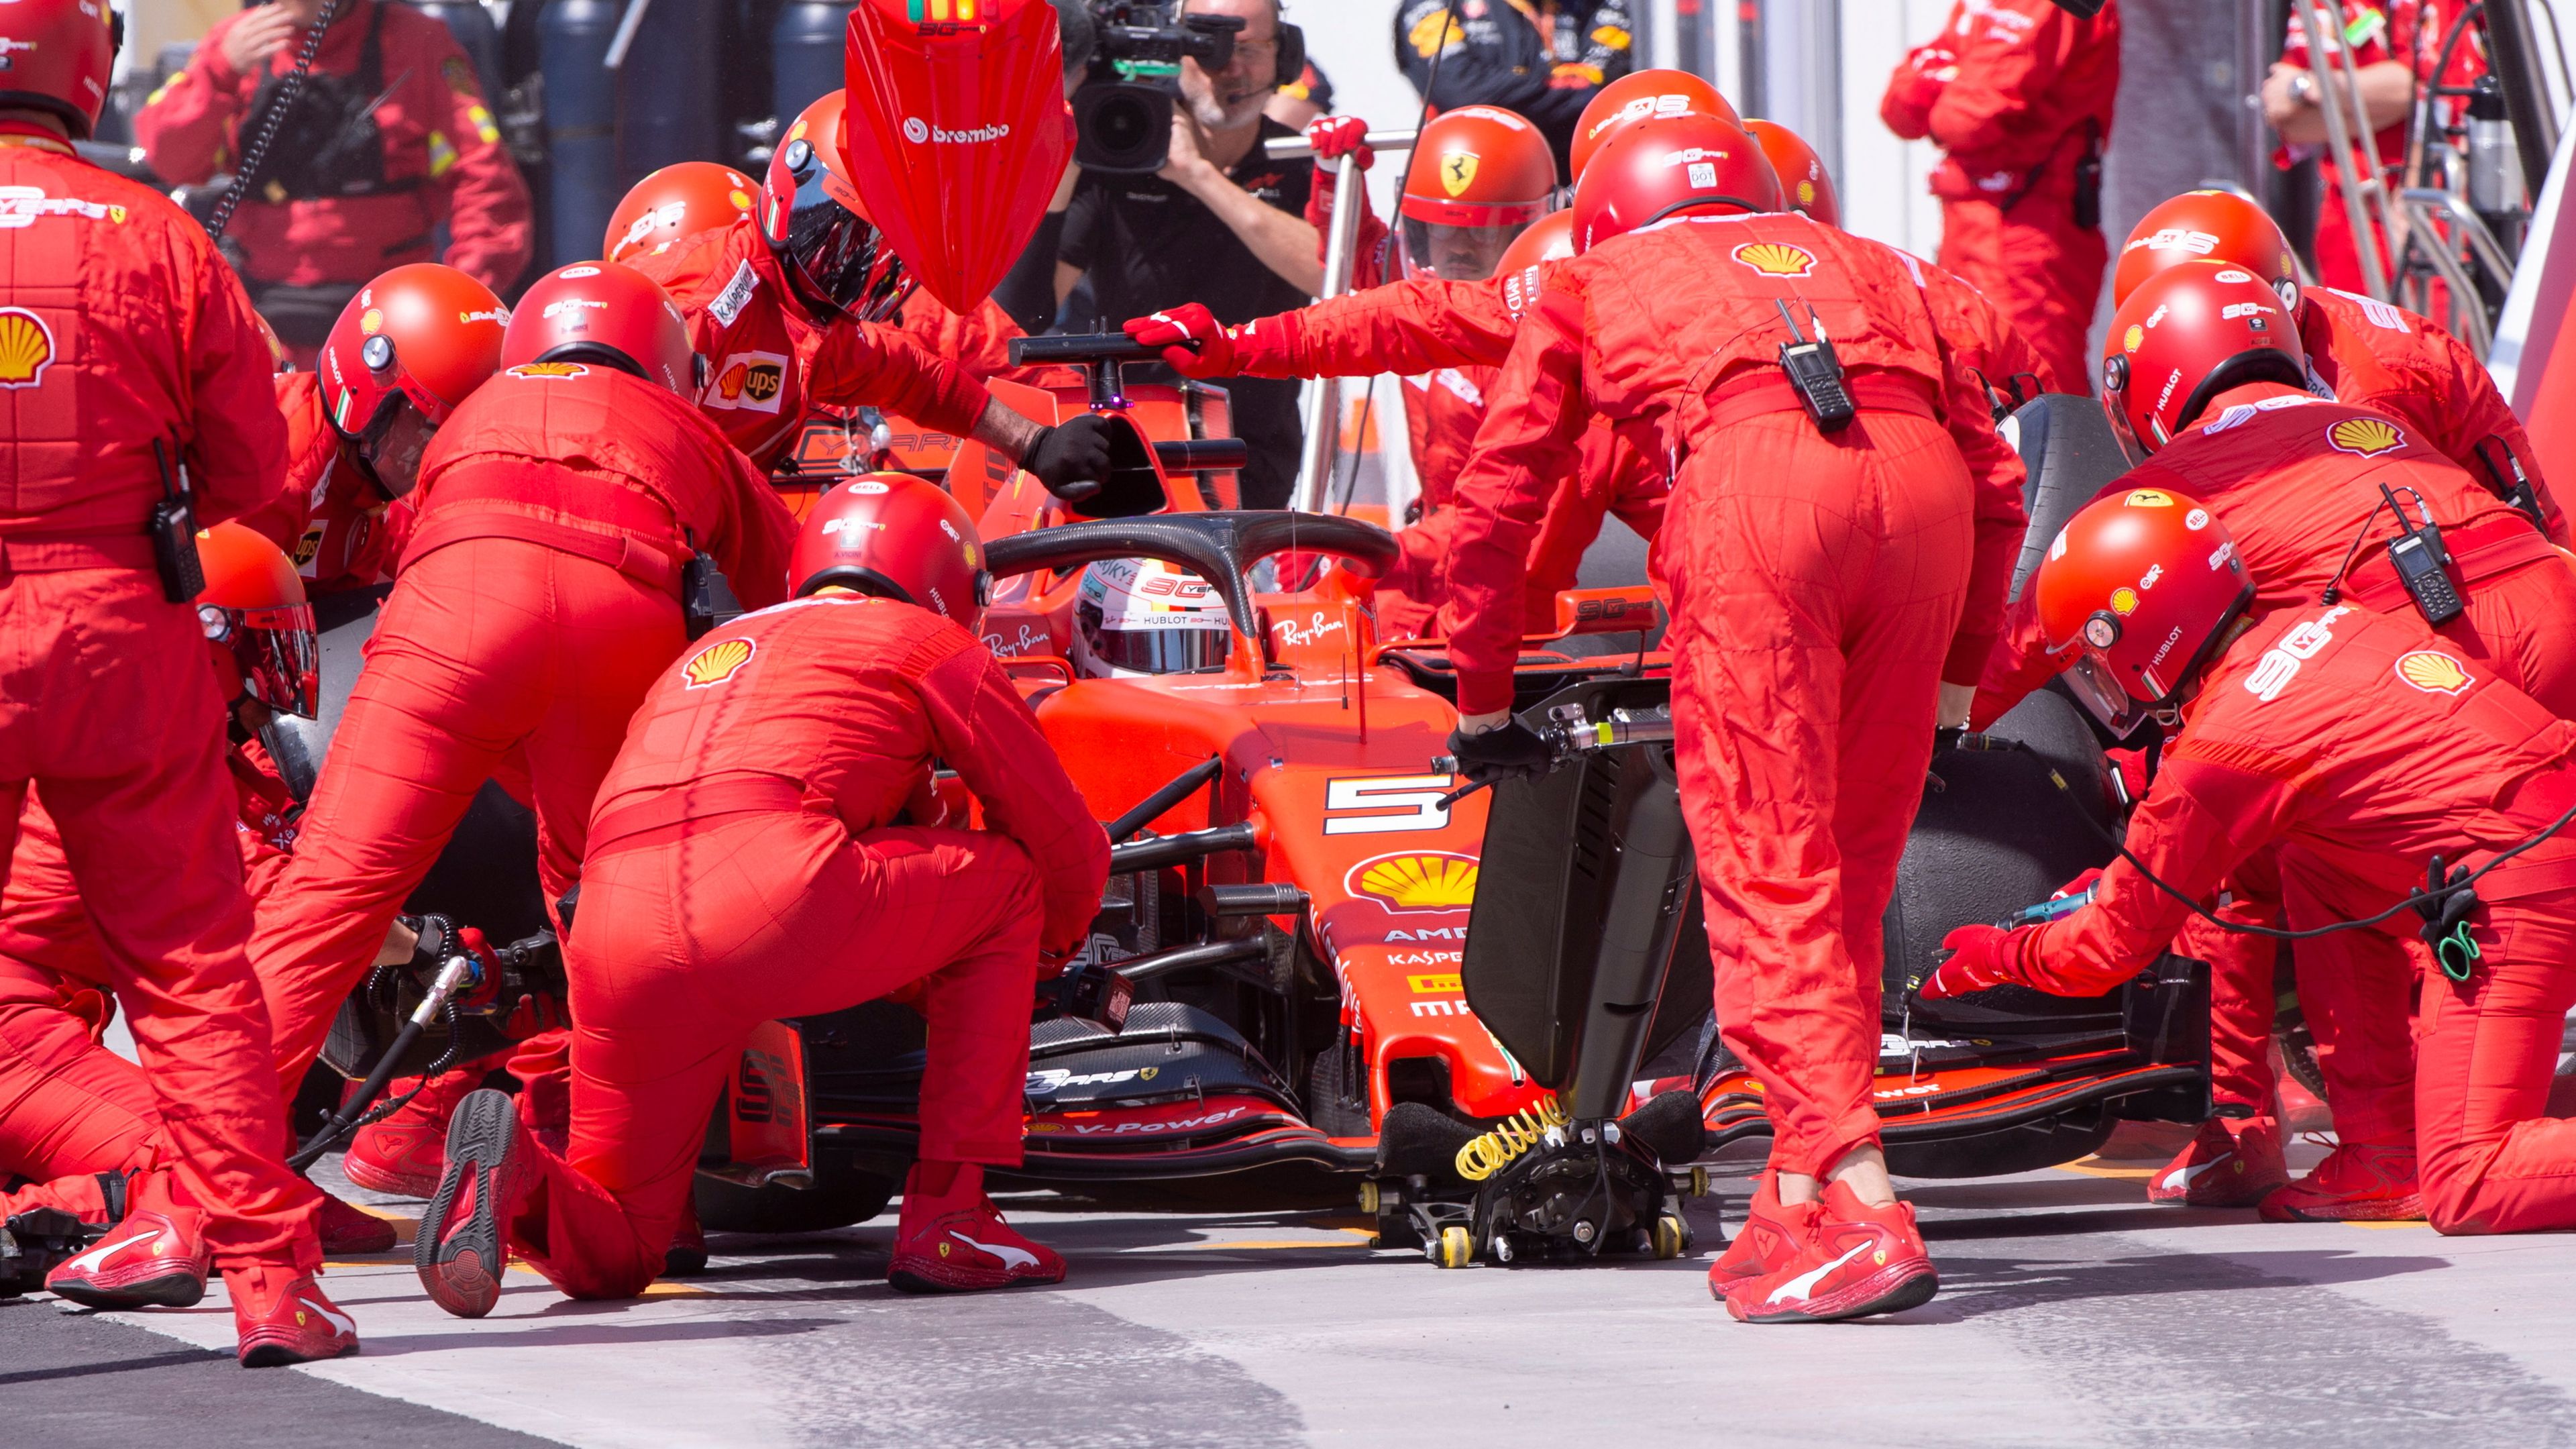 Fresh F1 challenge awaits Sebastian Vettel in France